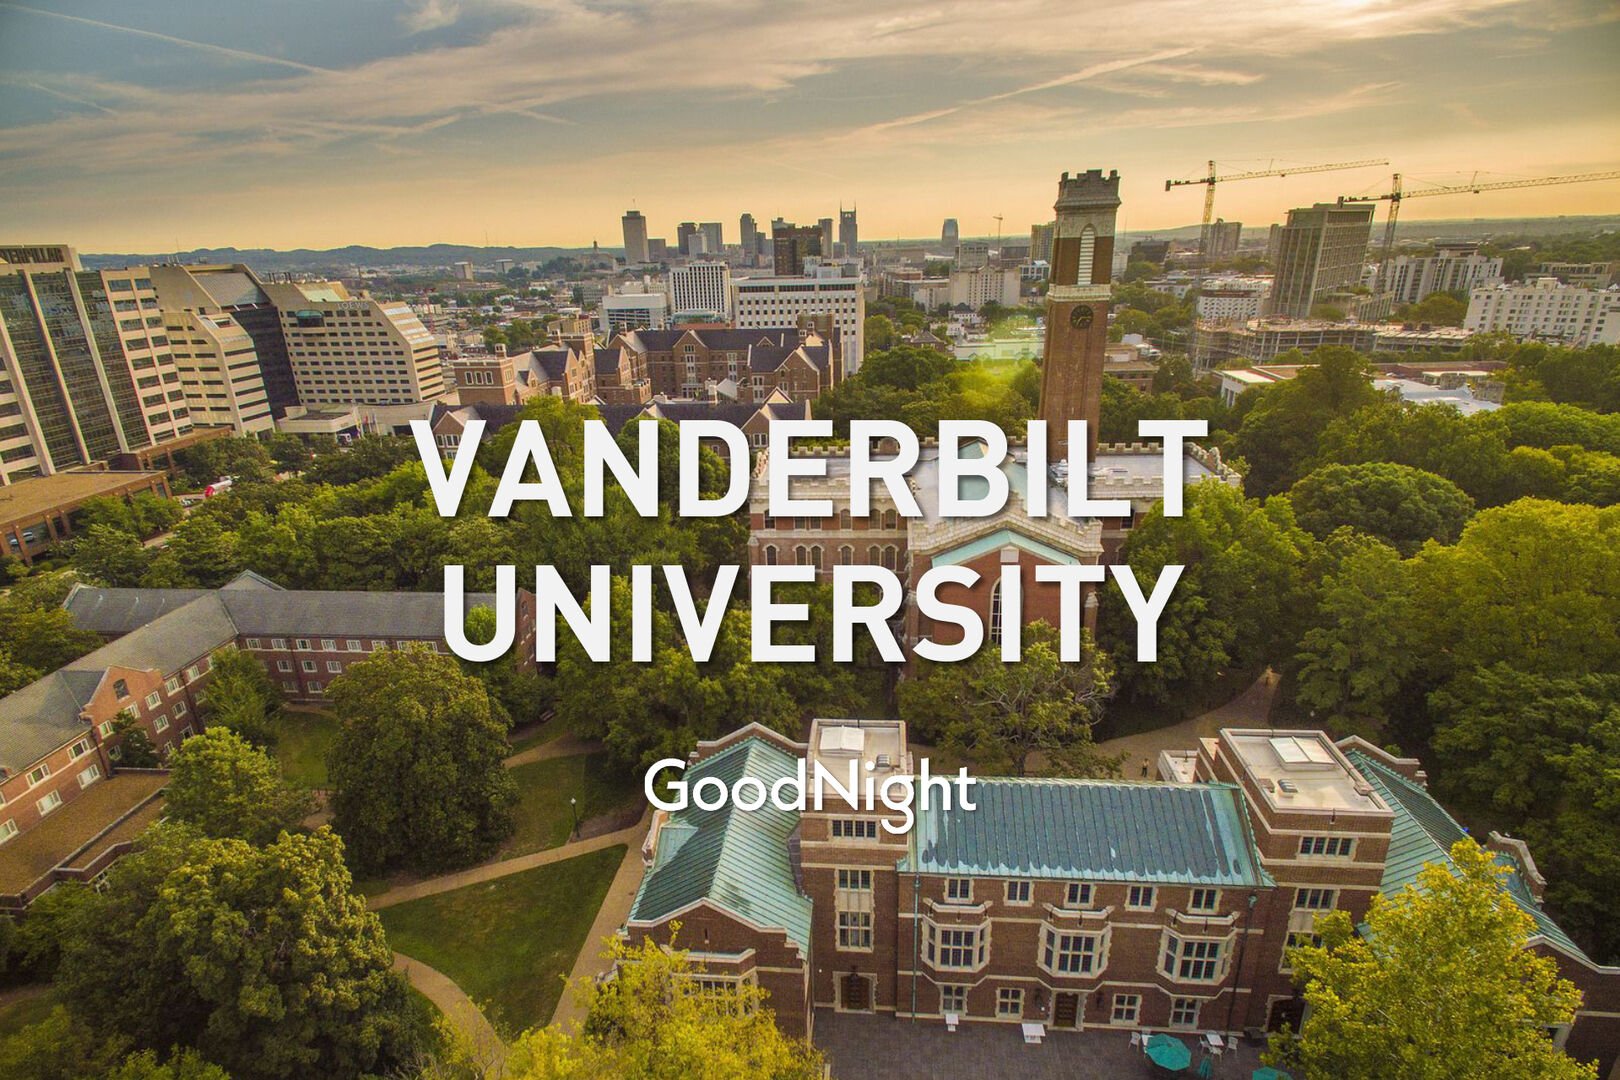 6 mins: Vanderbilt University